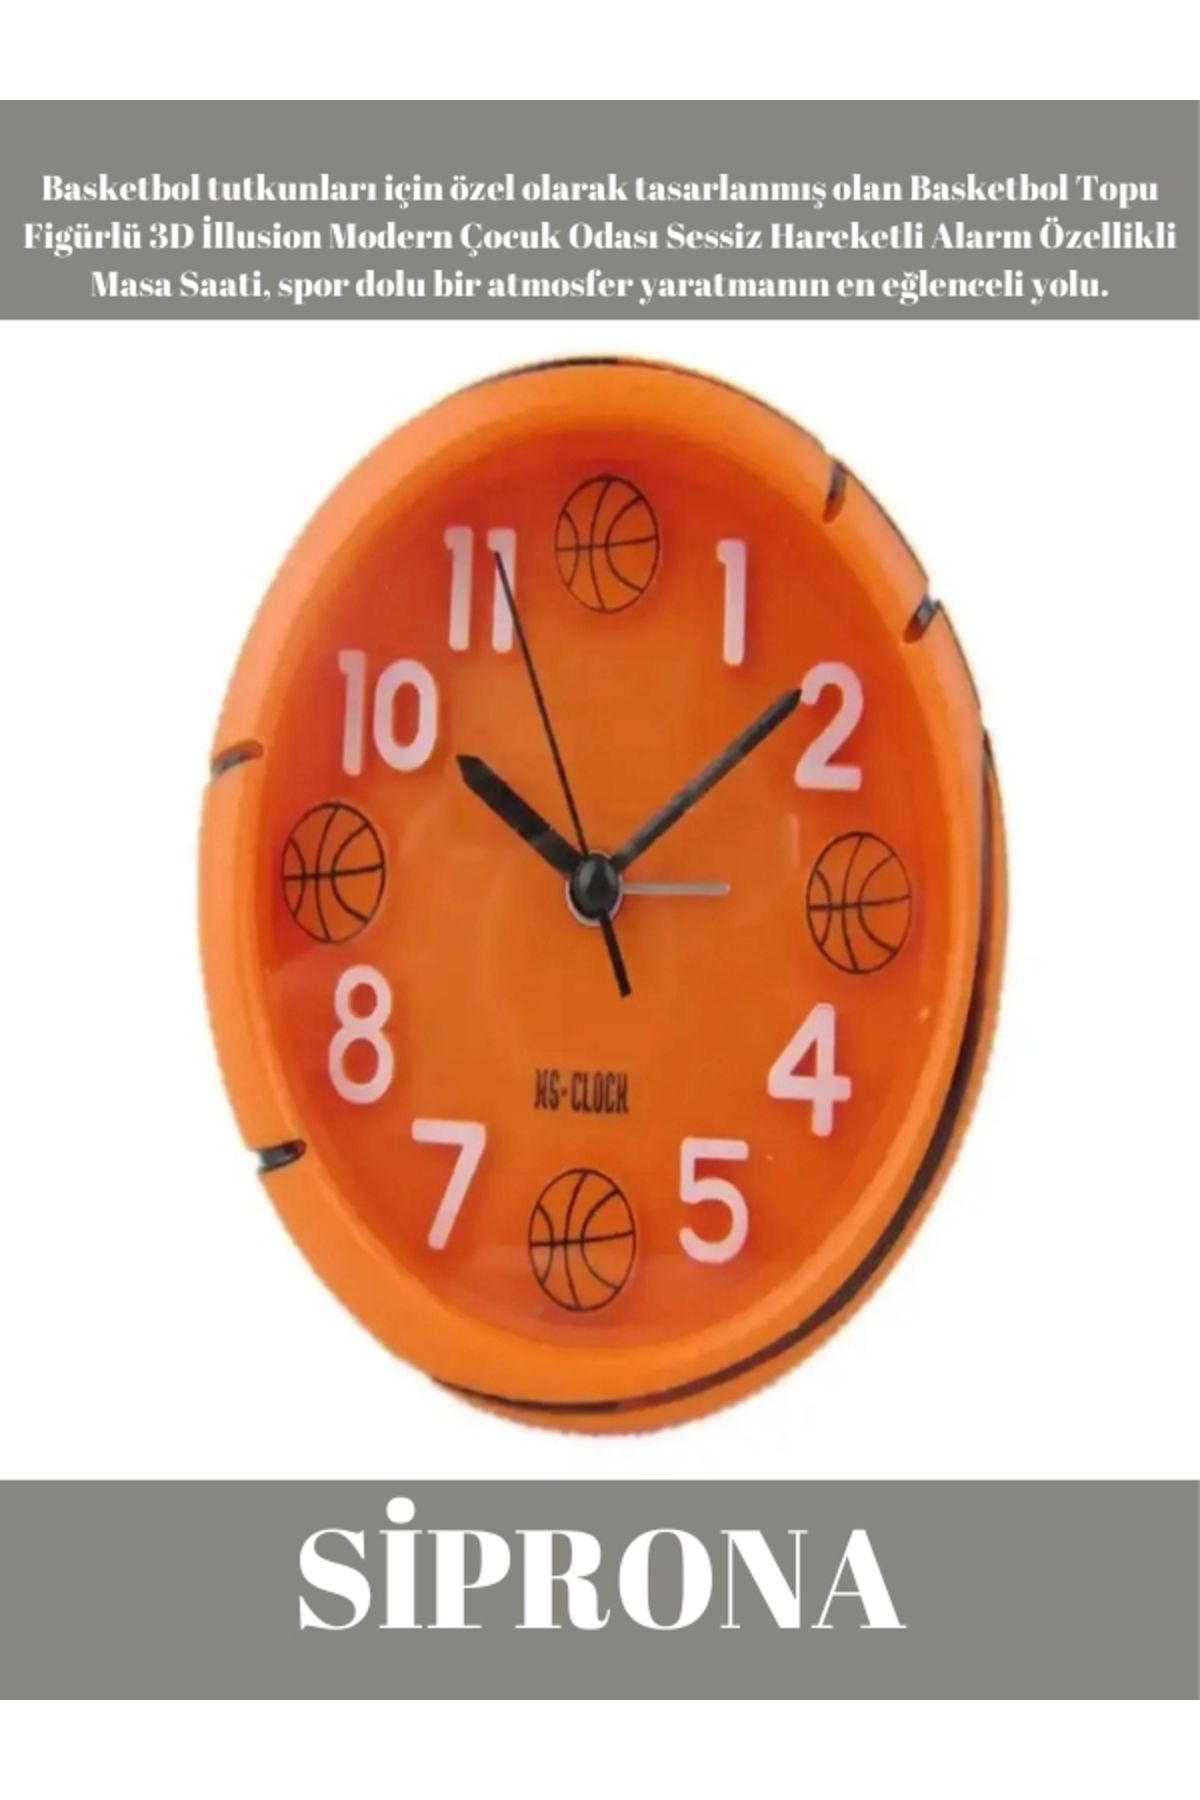 Genel Markalar Basketbol Topu Figürlü 3D İllusion Modern Çocuk Odası Sessiz Hareketli Alarm Özellikli Masa Saati